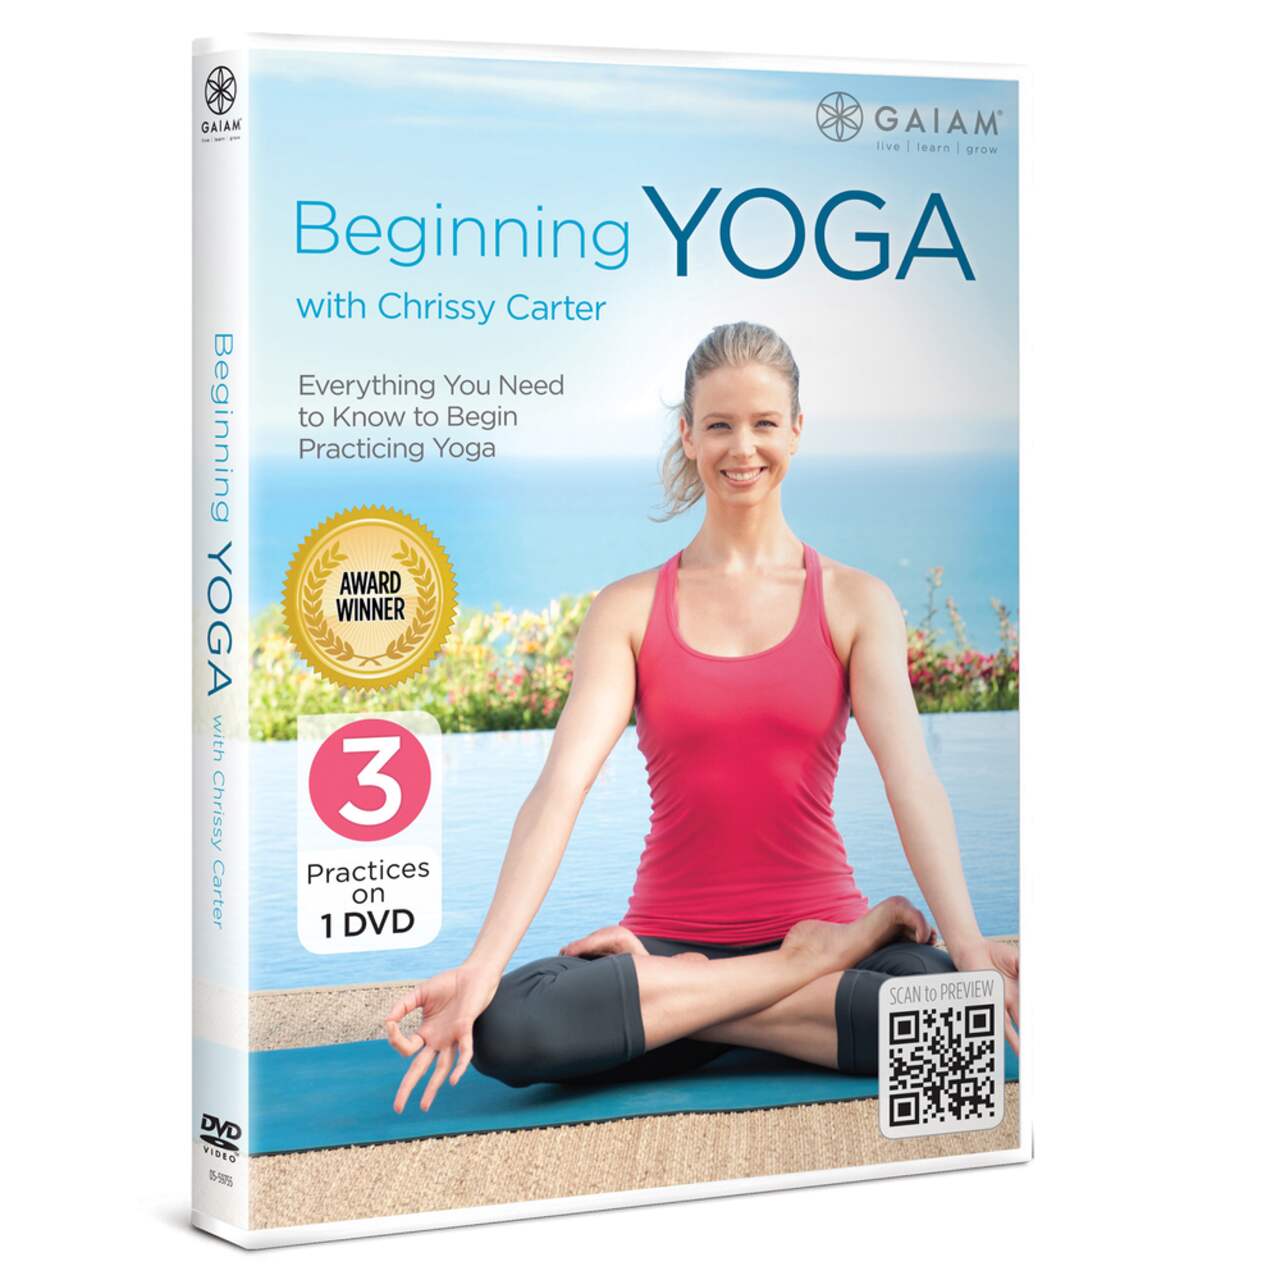 Gaiam Intro Yoga DVD